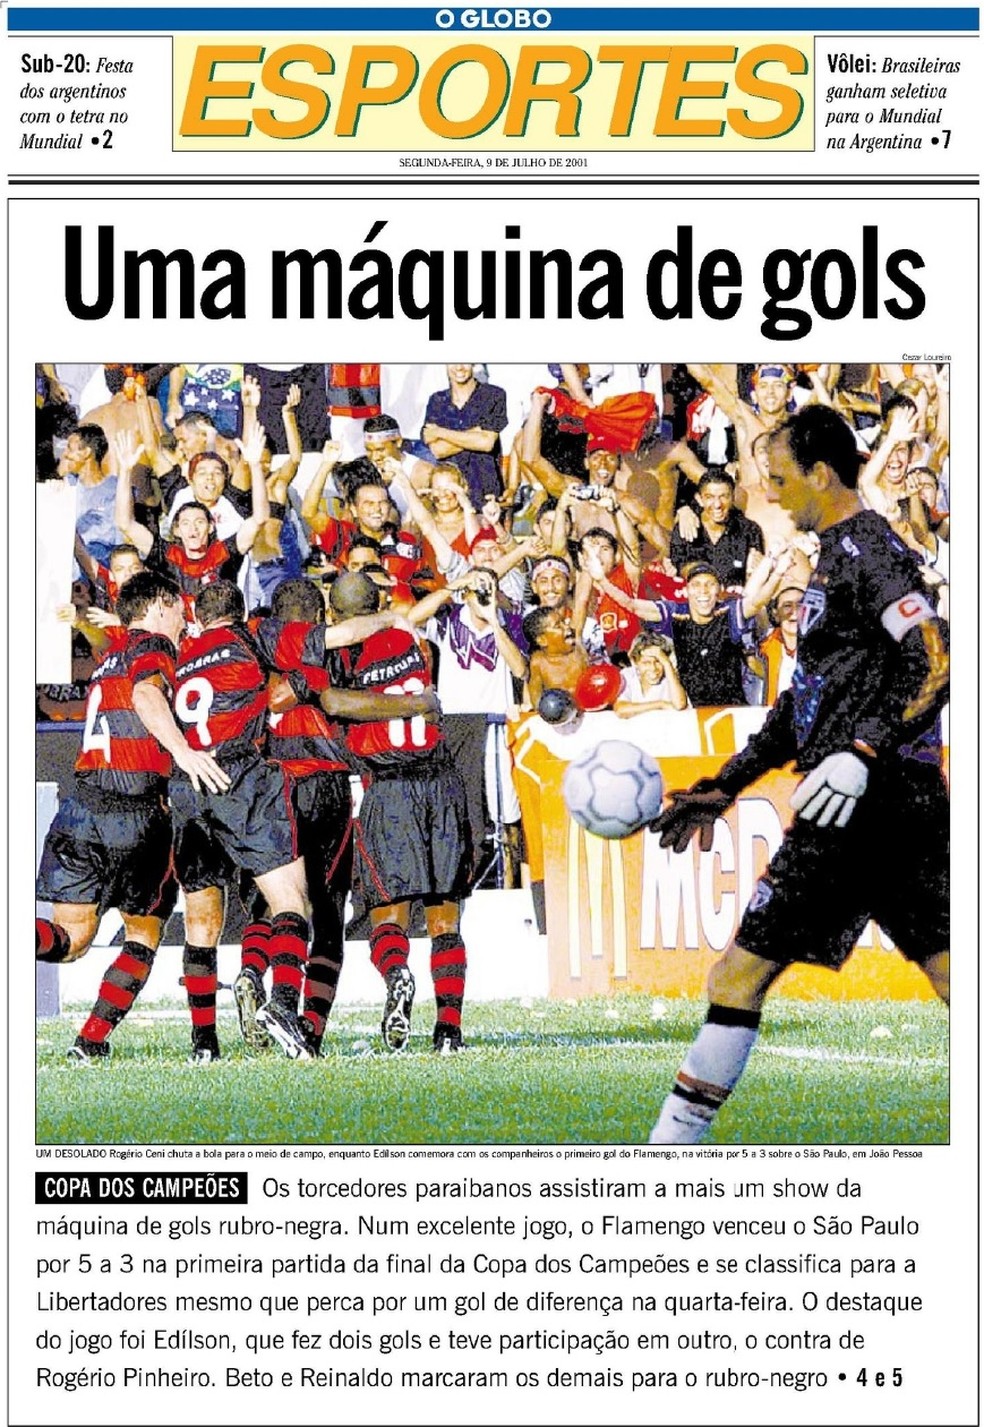 Olha, uma notícia em que o Fluminense ganhou, não o Flamengo que perdeu : r/ futebol